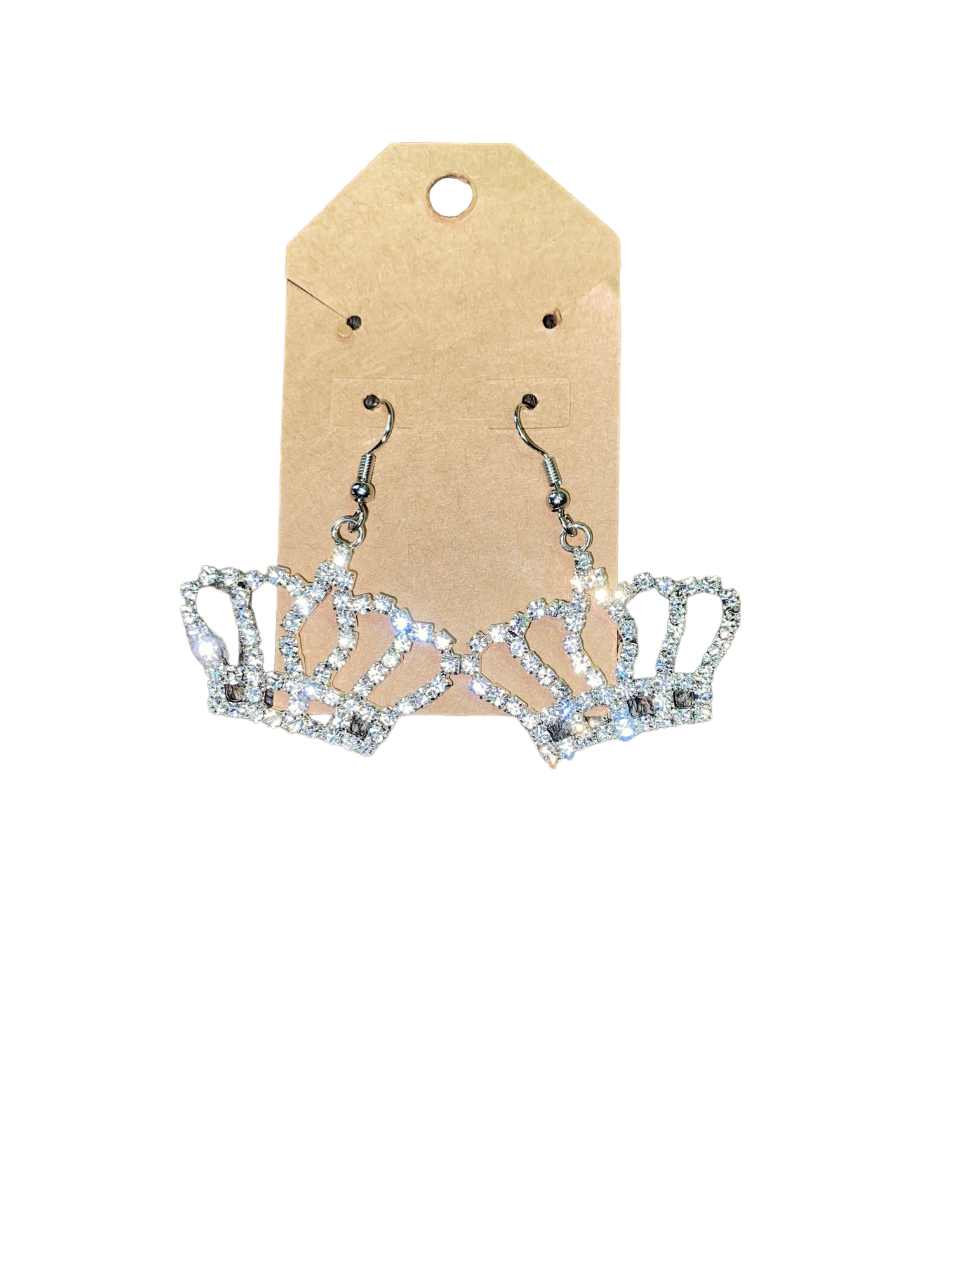 Rhinestone Crown Earrings